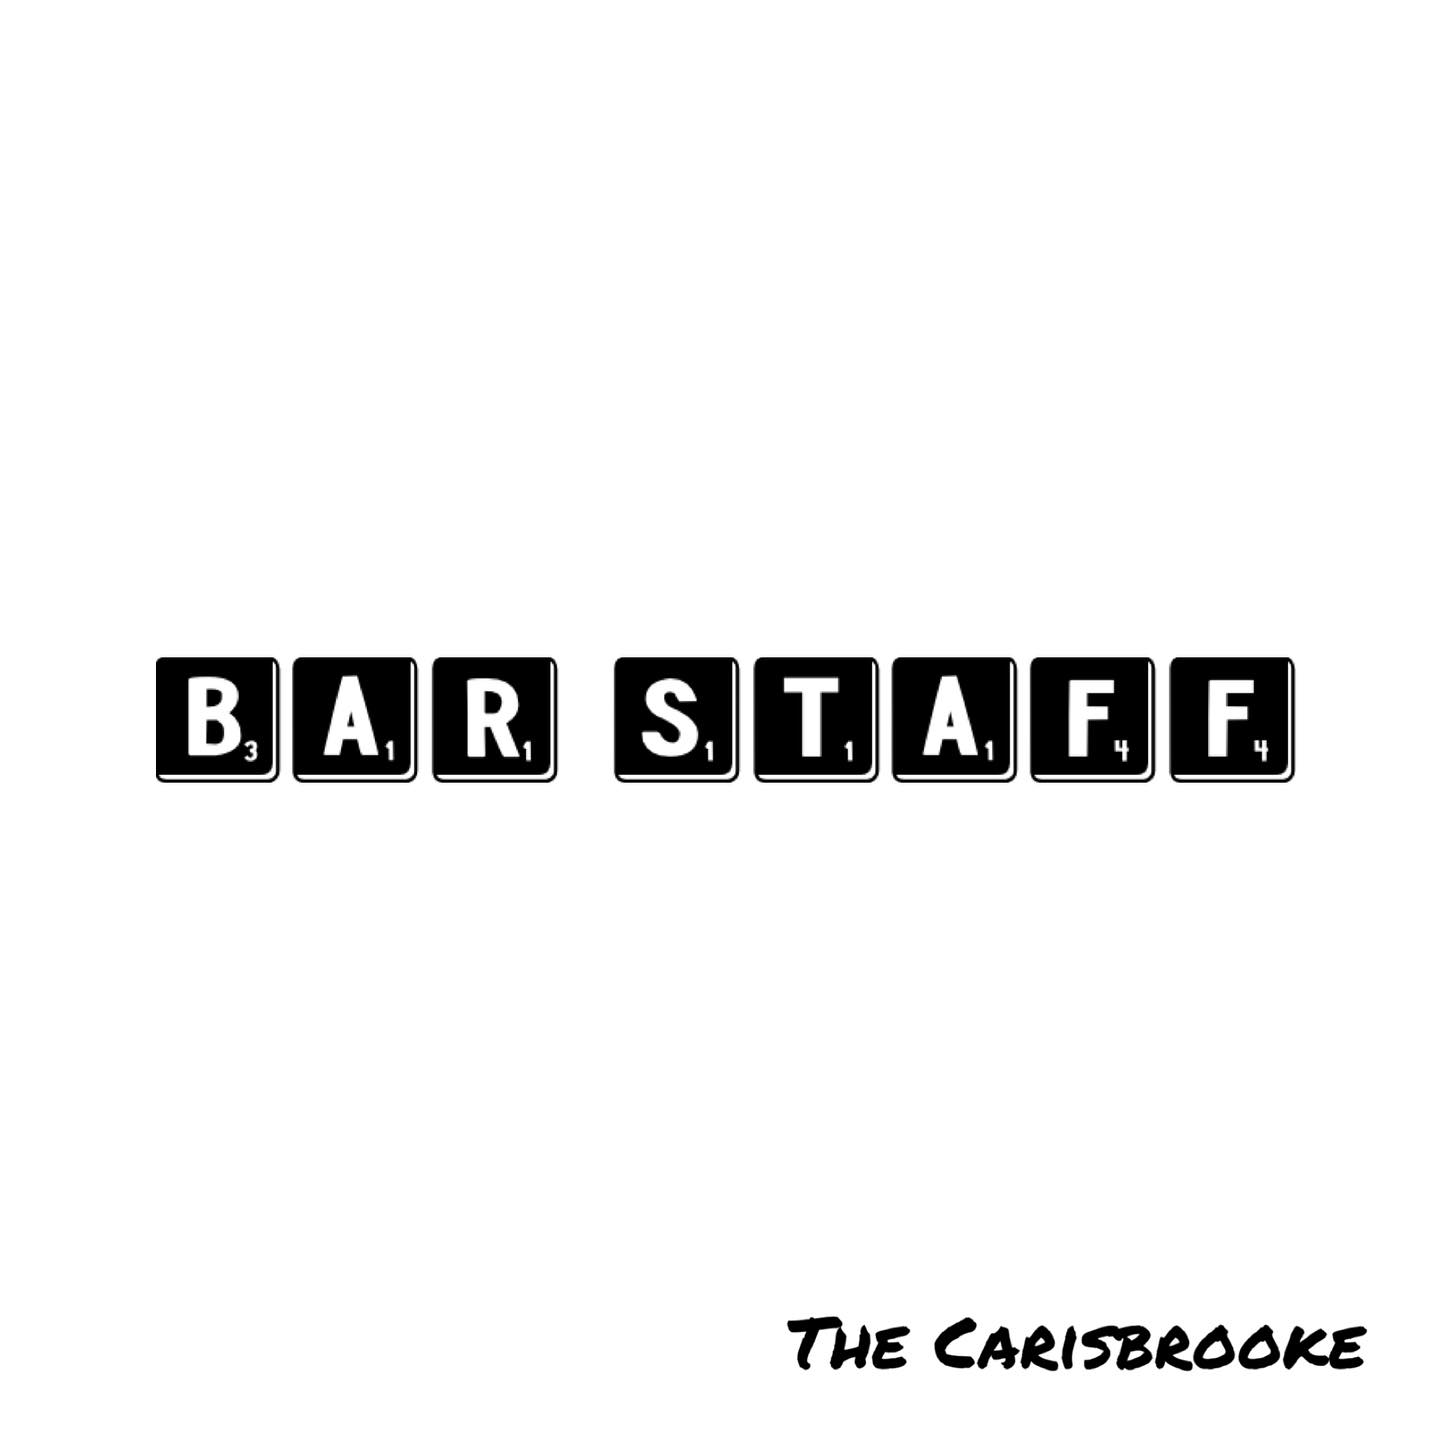 The Carisbrooke